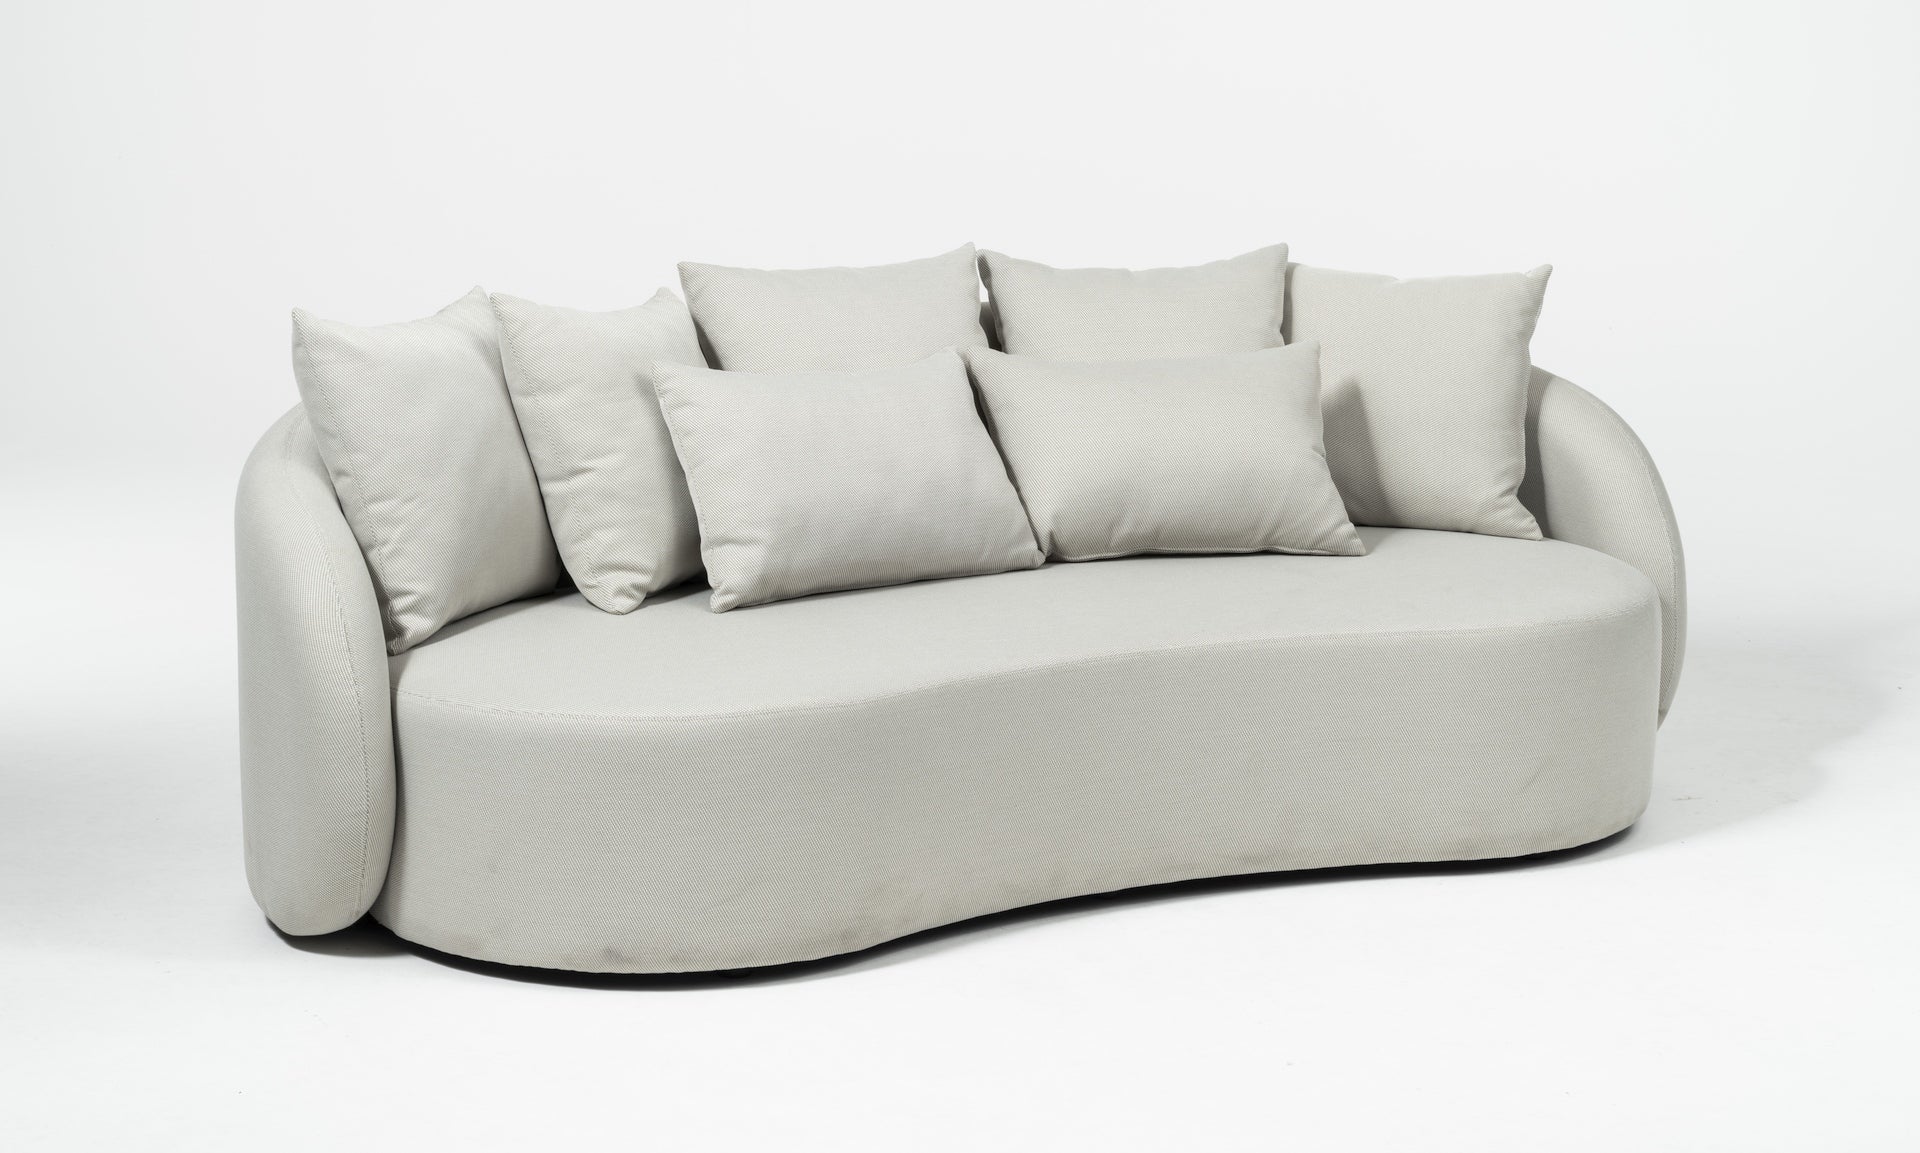 Modernes Letizia Garten-Sofa in Creme mit wasserabweisendem Axroma-Stoff und zahlreichen Rückenkissen, arrangiert auf einer Holzterrasse mit einem eleganten weißen Beistelltisch, präsentiert als ideale Ergänzung für stilvolles Outdoor-Entspannen.